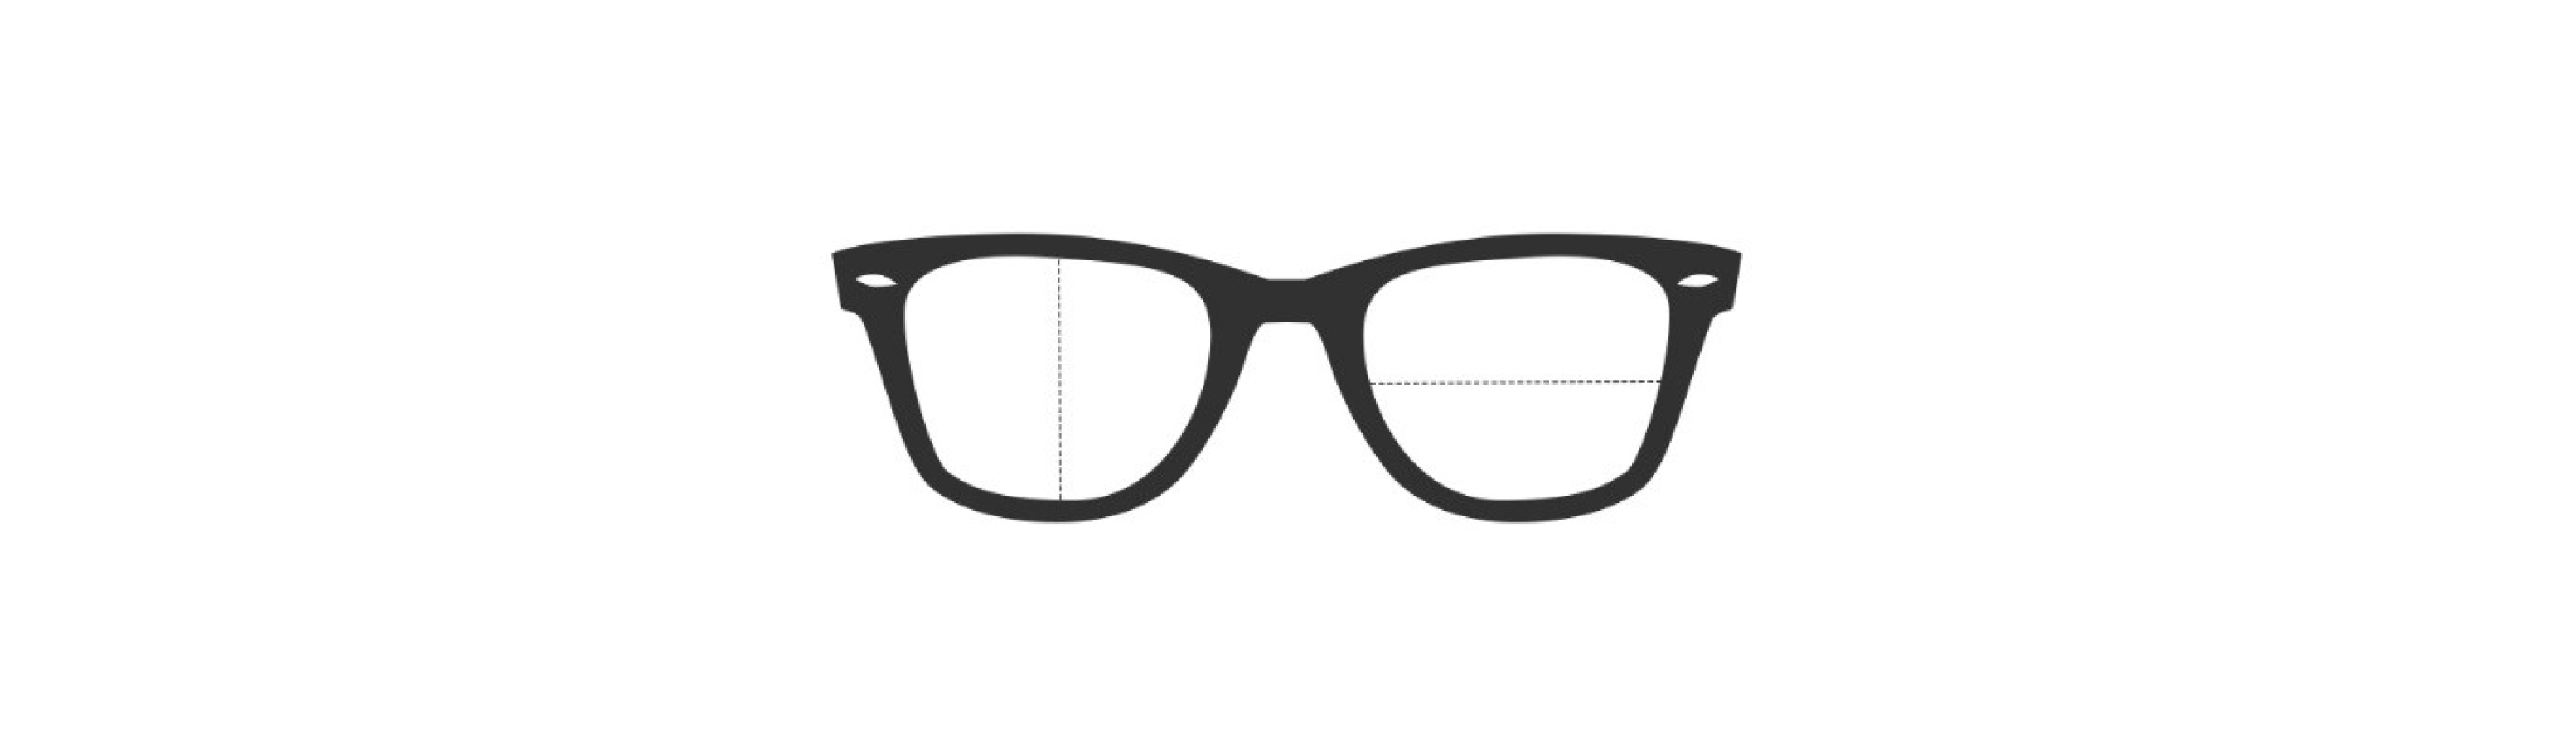 Por qué es importante elegir unas gafas graduadas de calidad? - El